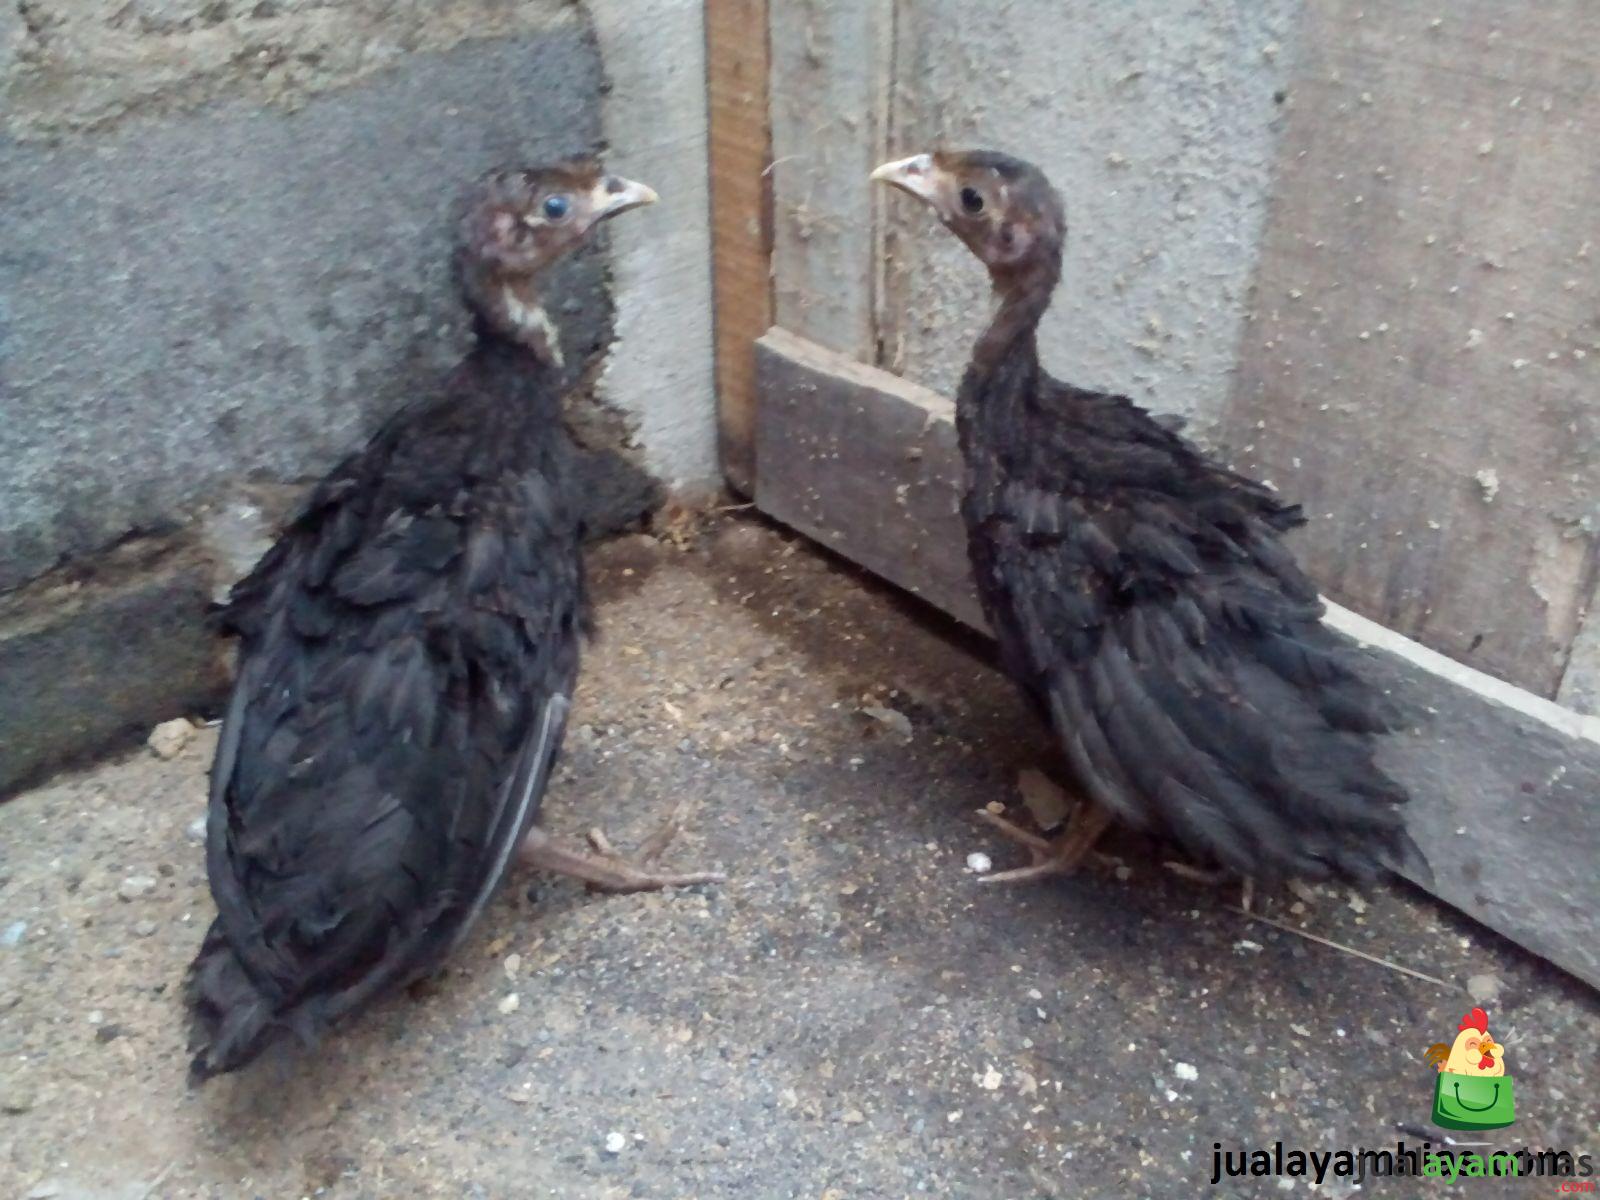 Ayam Kalkun Black Spanish Umur 1 Bulan 1 Pengiriman Berbagai Kalkun Pesanan Pak Yubi di Pati Jawa Tengah Jual Ayam Hias HP : 08564 77 23 888 | BERKUALITAS DAN TERPERCAYA Pengiriman Berbagai Kalkun Pesanan Pak Yubi di Pati Jawa Tengah Pengiriman Berbagai Kalkun Pesanan Pak Yubi di Pati Jawa Tengah